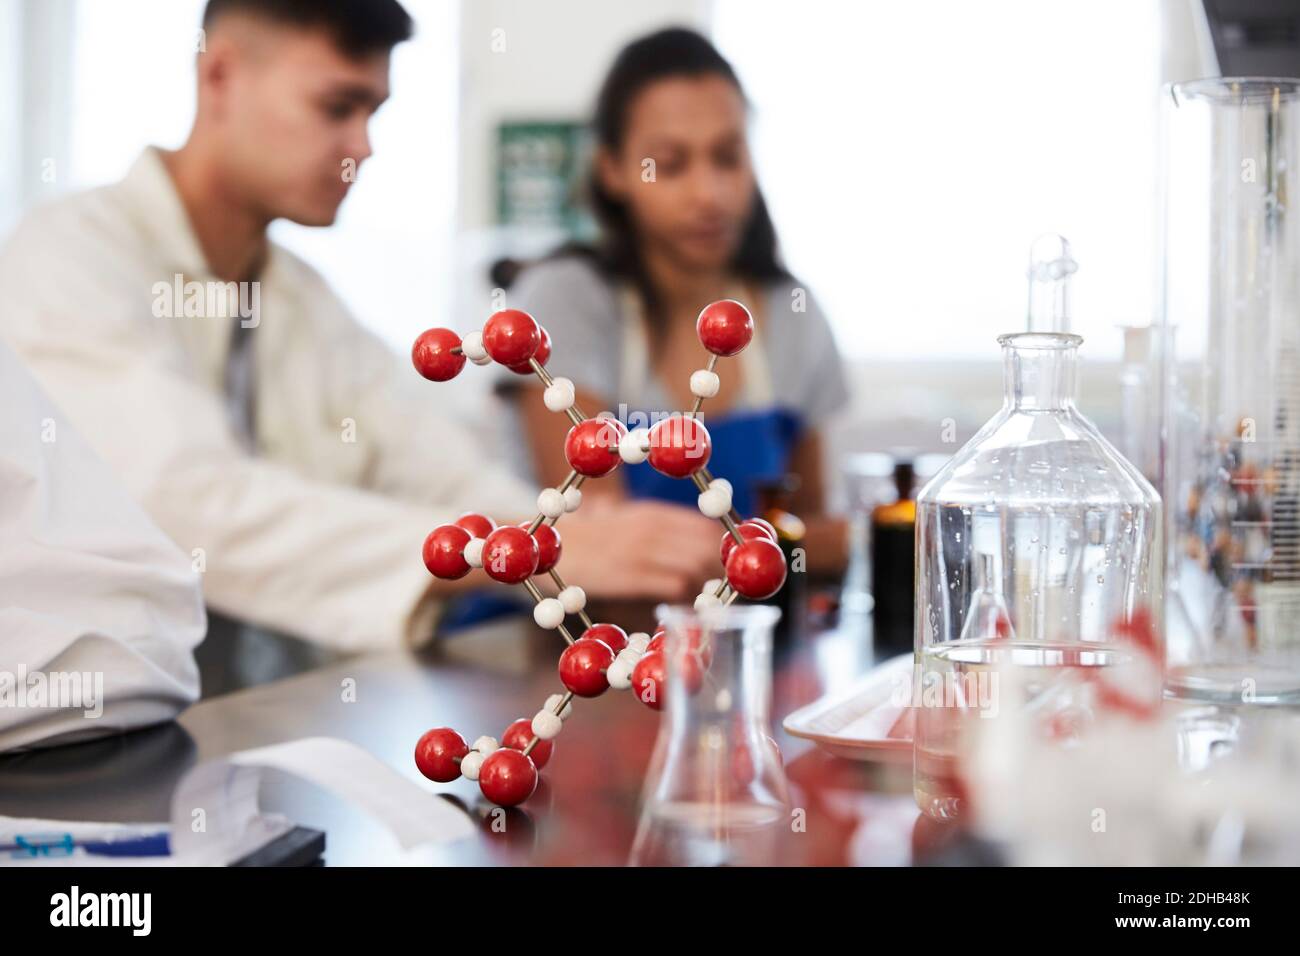 Molekulare Struktur auf dem Tisch gegen junge Studenten im Chemielabor Stockfoto